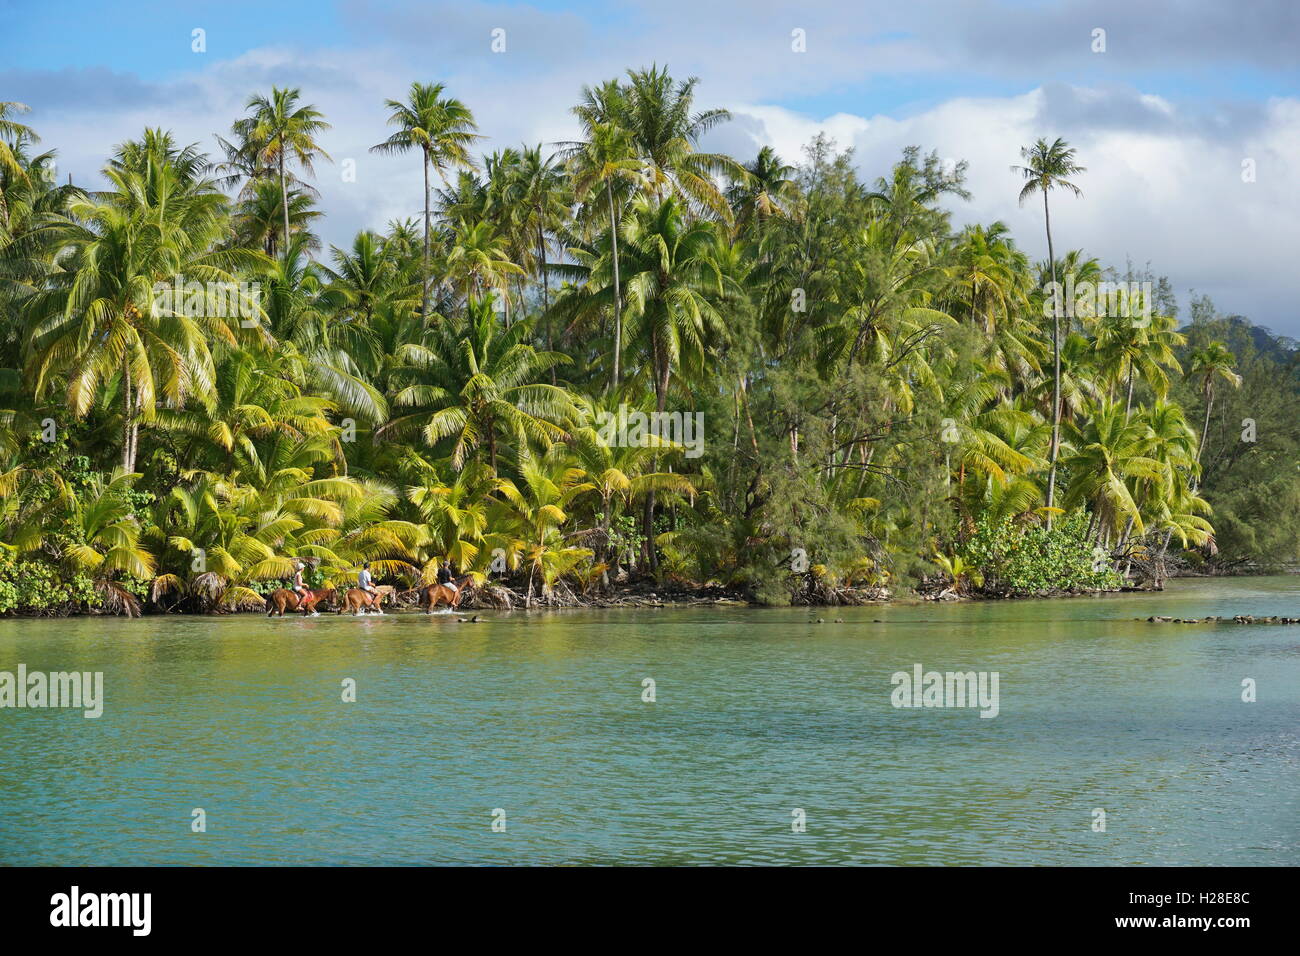 Costa tropicale lussureggiante con palme da cocco e turisti a cavallo in acque poco profonde, Huahine isola, pacific, Polinesia Francese Foto Stock